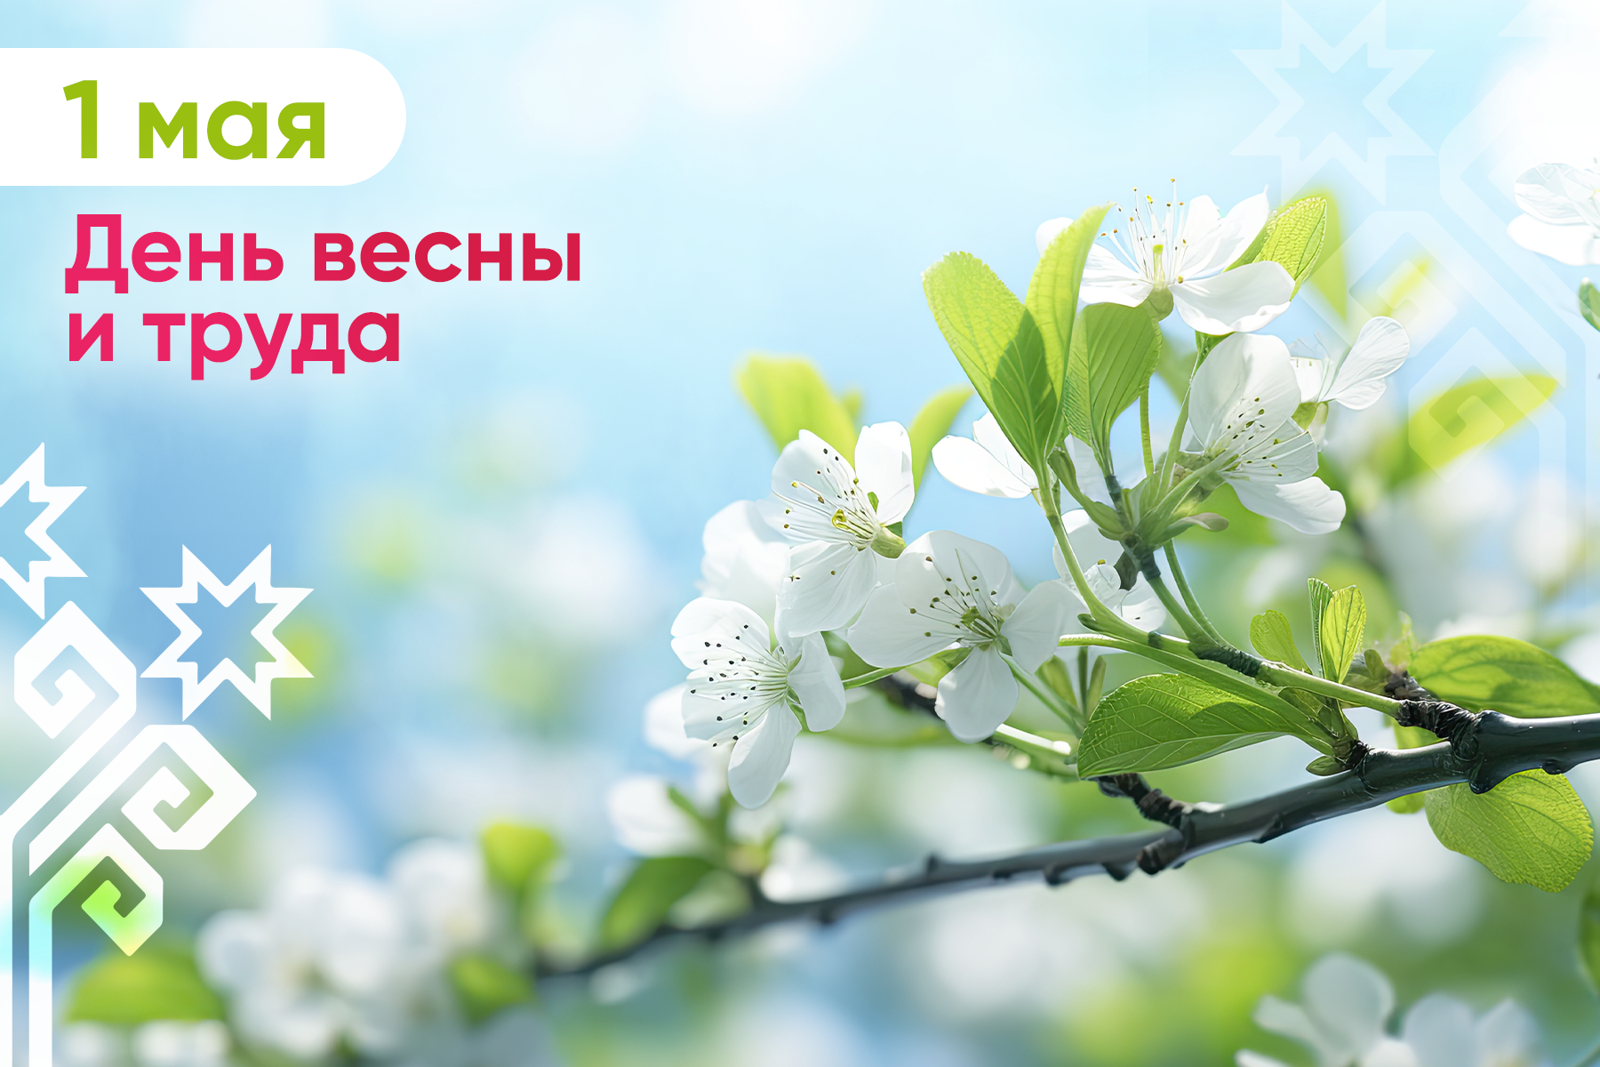 Олег Николаев поздравляет с Днем весны и труда